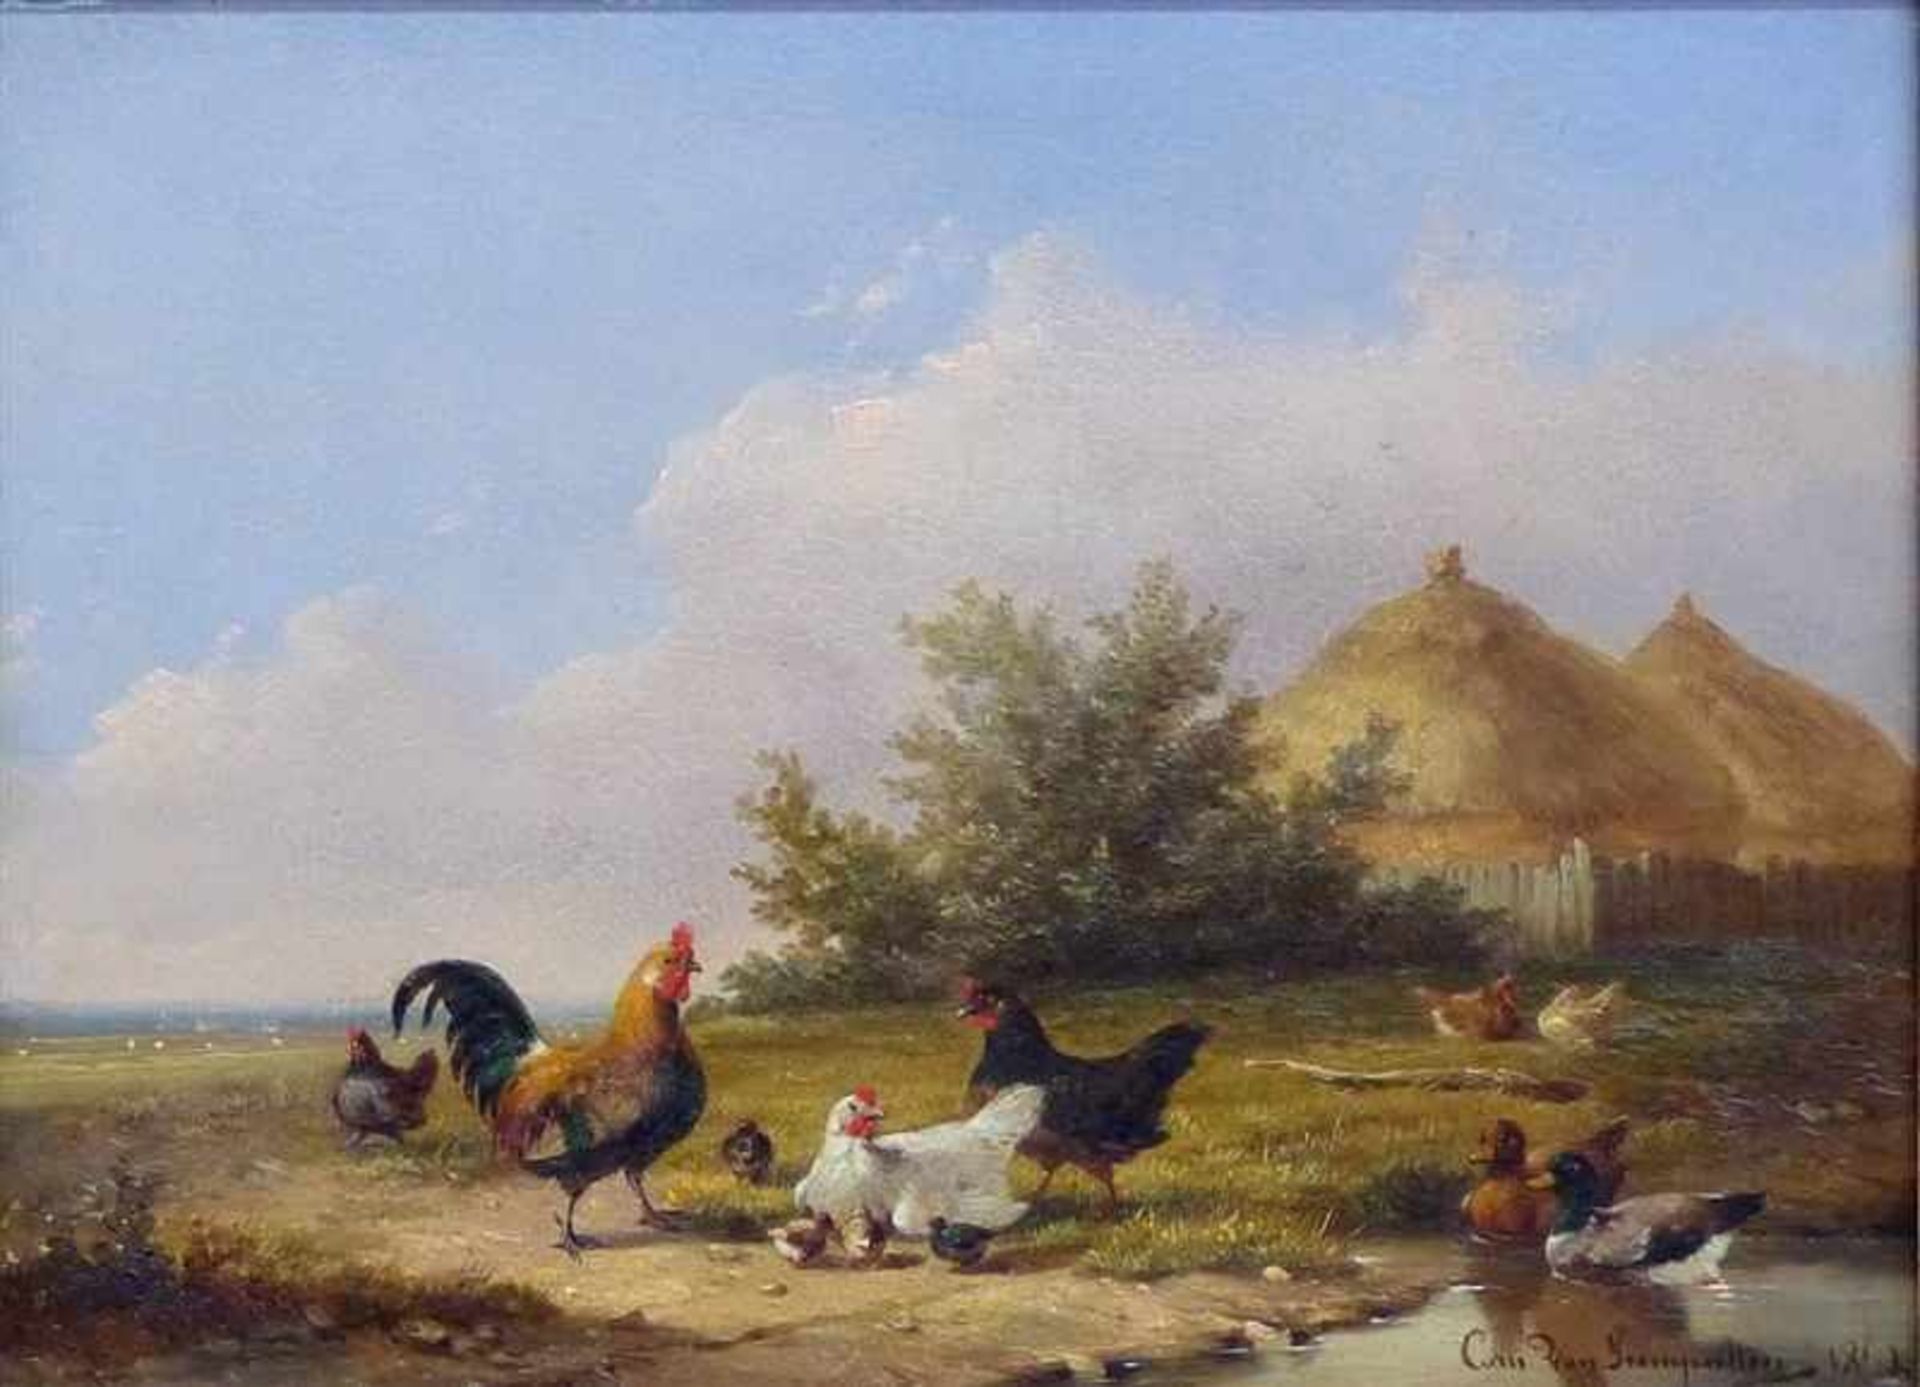 Leemputten, Cornelis van1841 - 1902, Öl auf Holz, Landschaft mit Hütten, Hühnern und Wildenten,